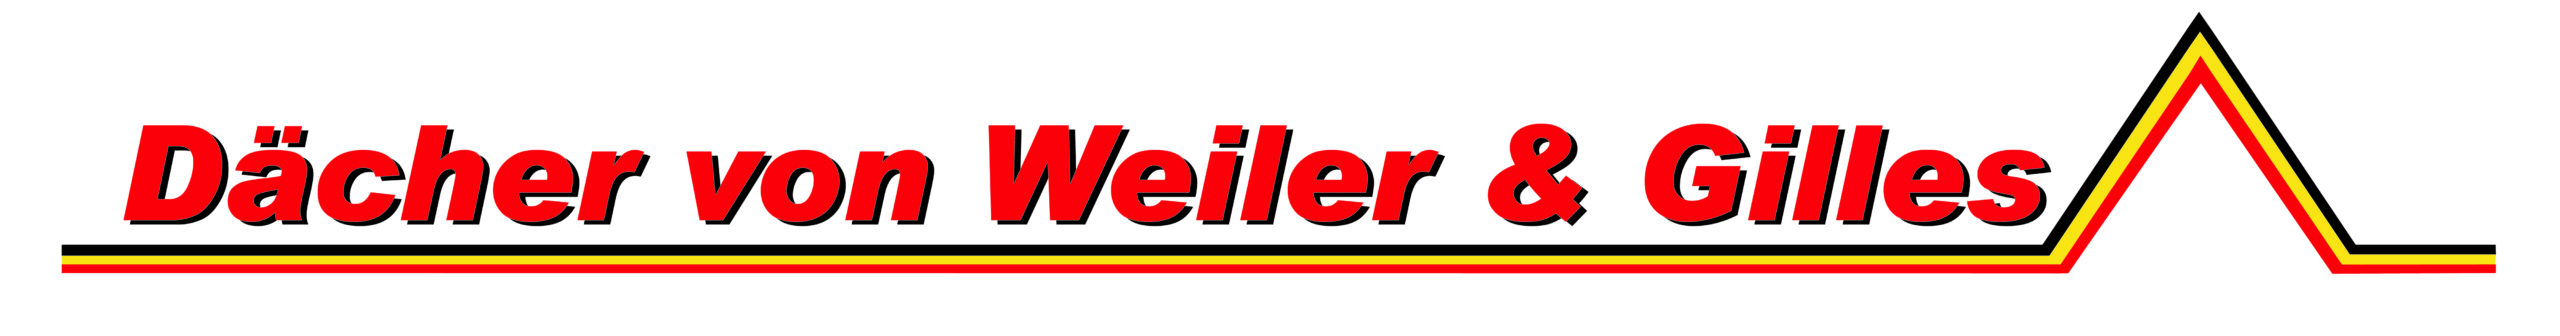 Daecher-von-Weiler-und-Gilles-02